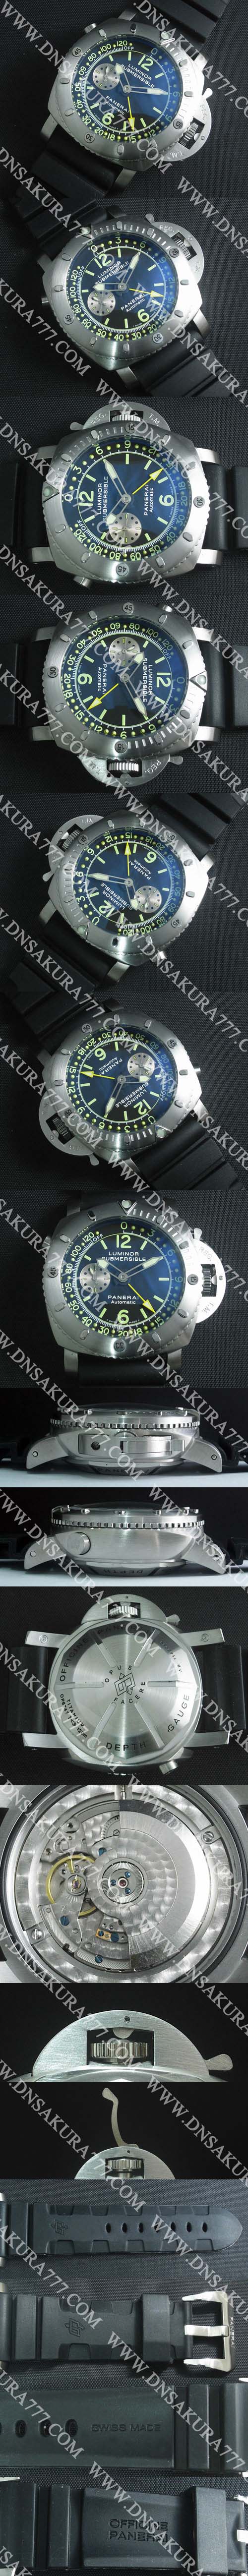 【ファッション時計】PANERAI LUMINOR マリーナ PAM00307コピー時計 21600振動 自動巻き スモールセコンド ブルー